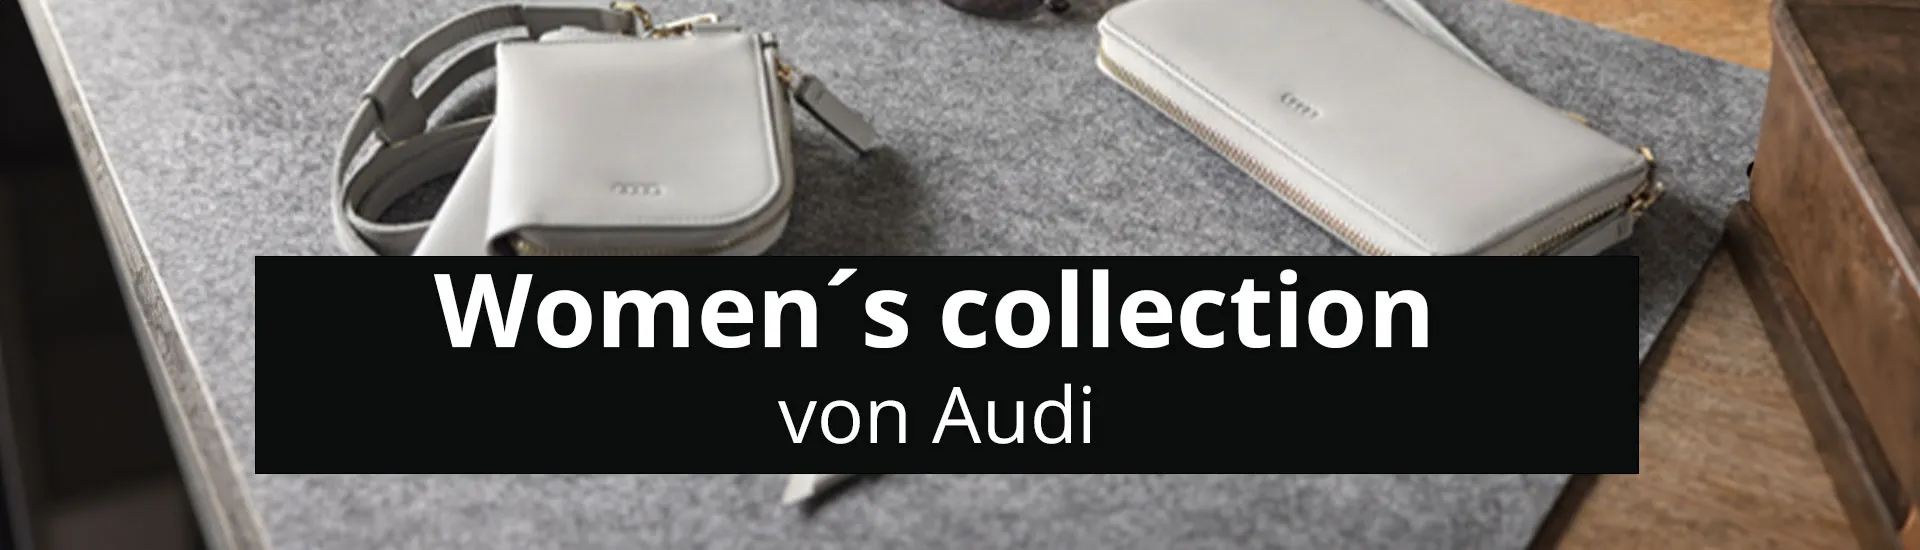 Header audi collection   die neue audi womens collection rosier online shop newsletter (2)